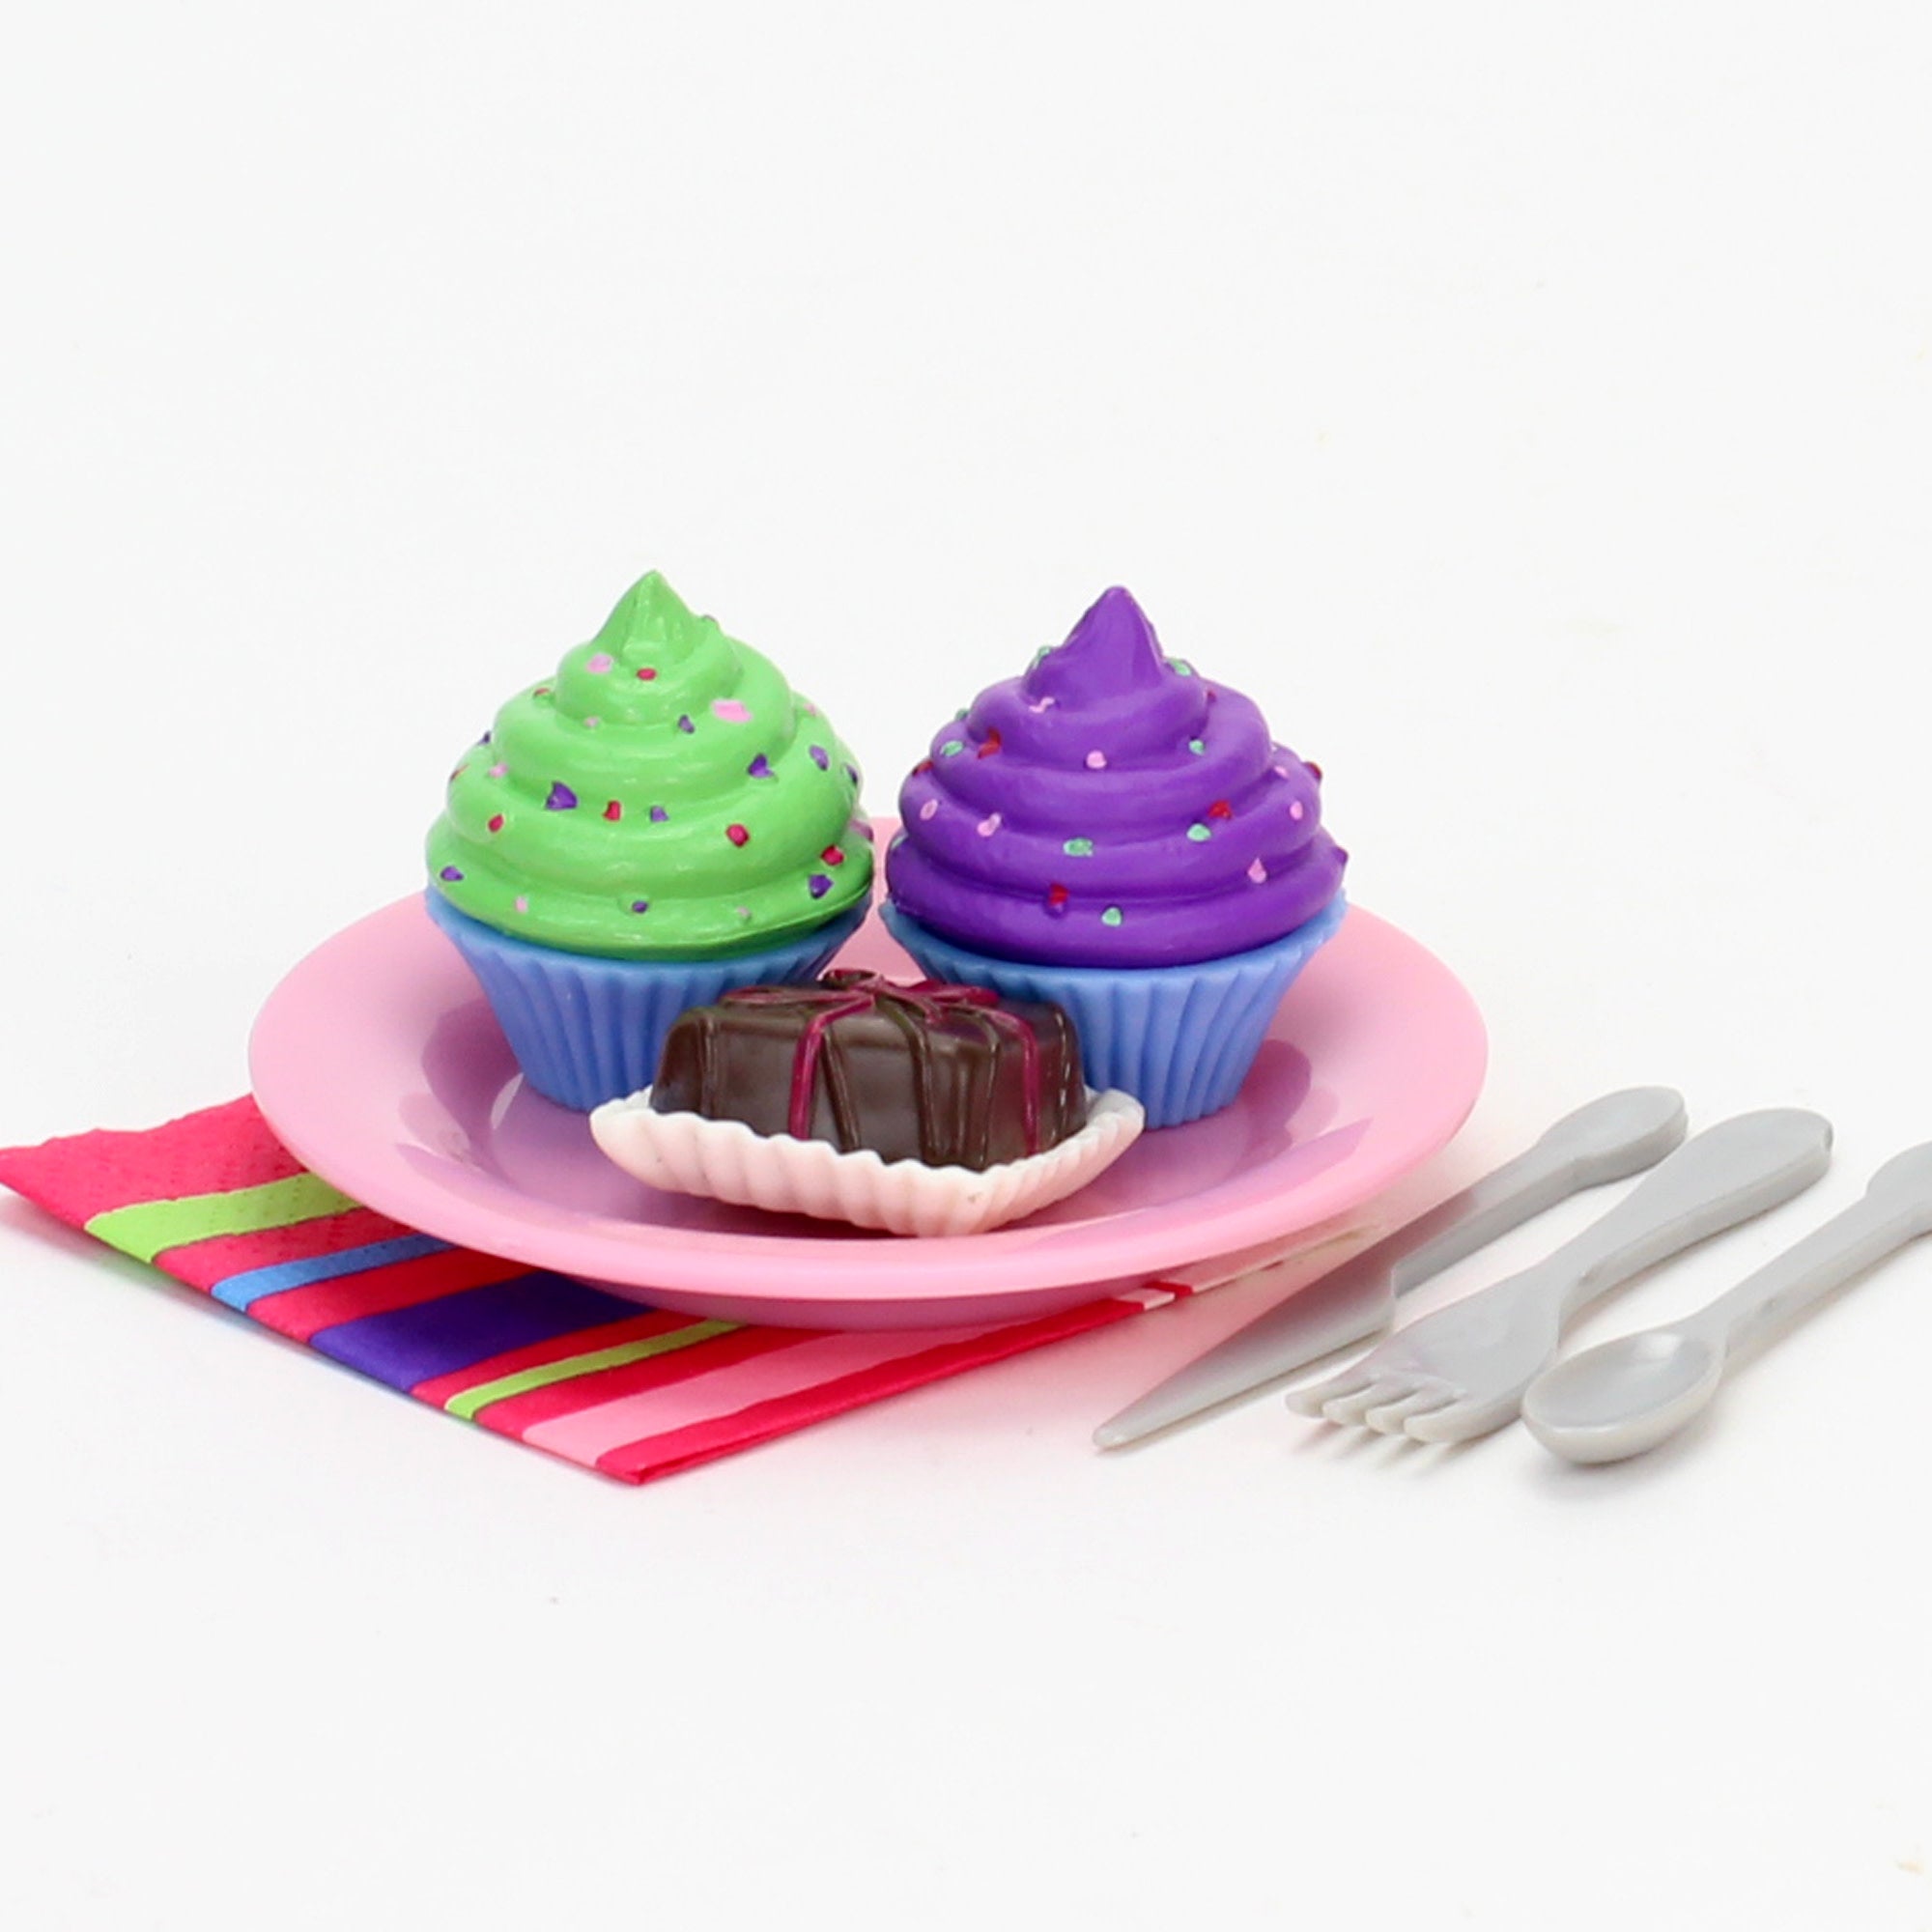 Sophia's - 18" Doll - Cupcake & Petit Four Set + Dessert Display Set - Pink